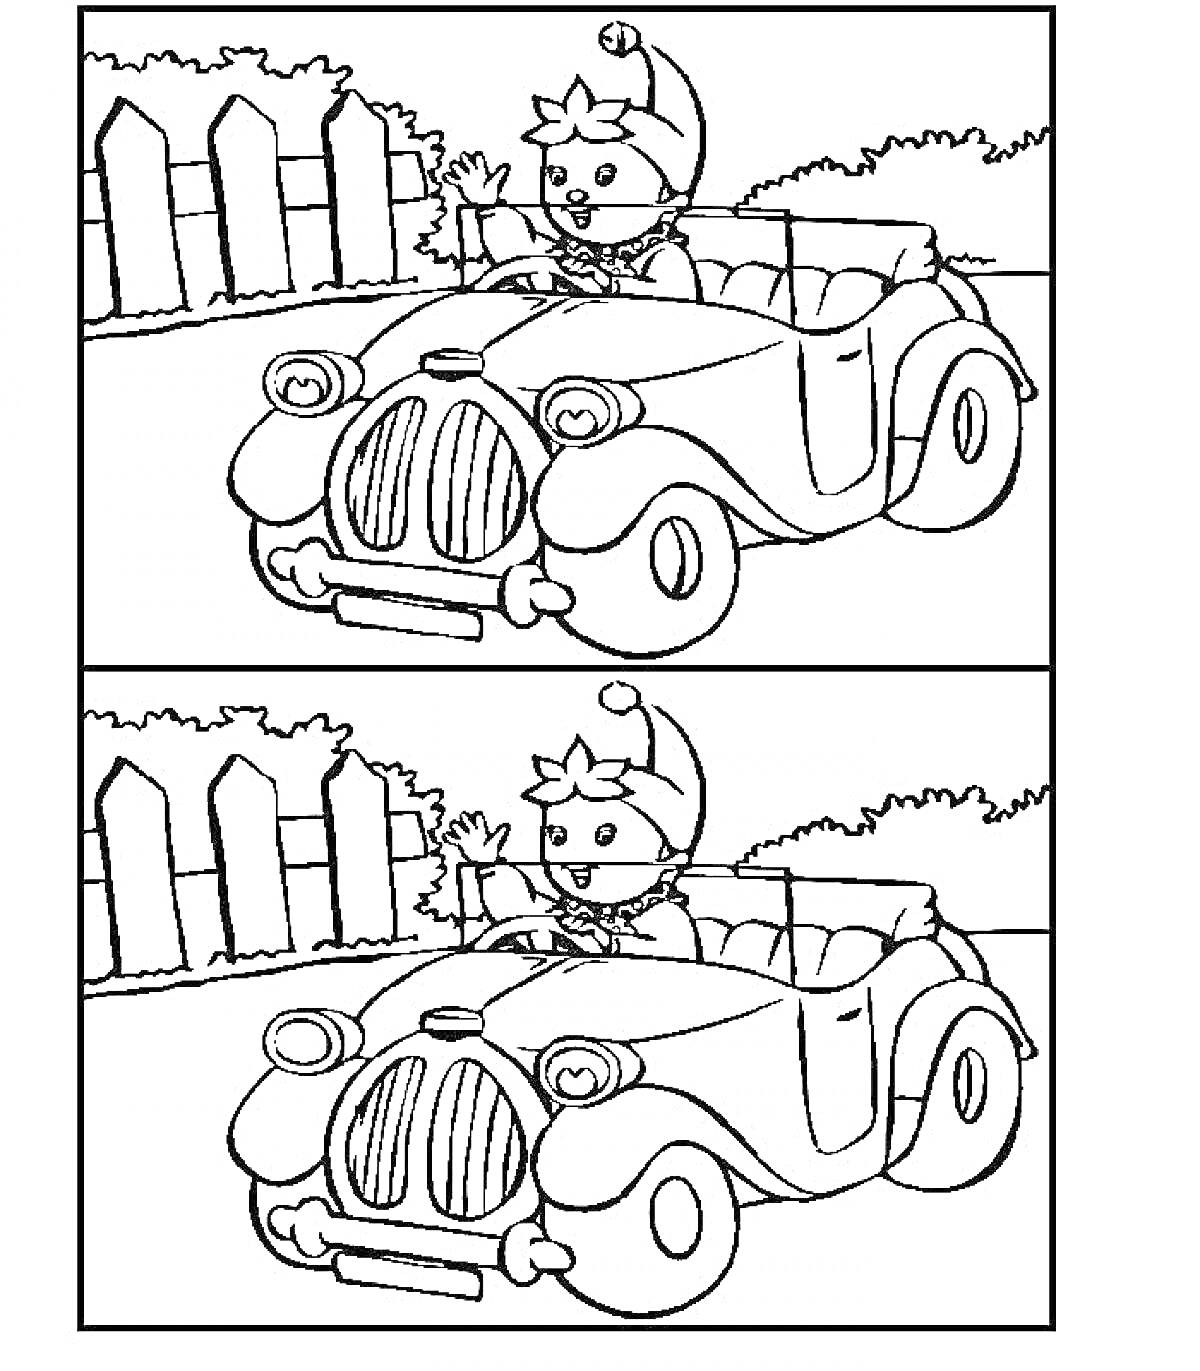 Котик в шапочке едет на машине по дороге с забором и кустами